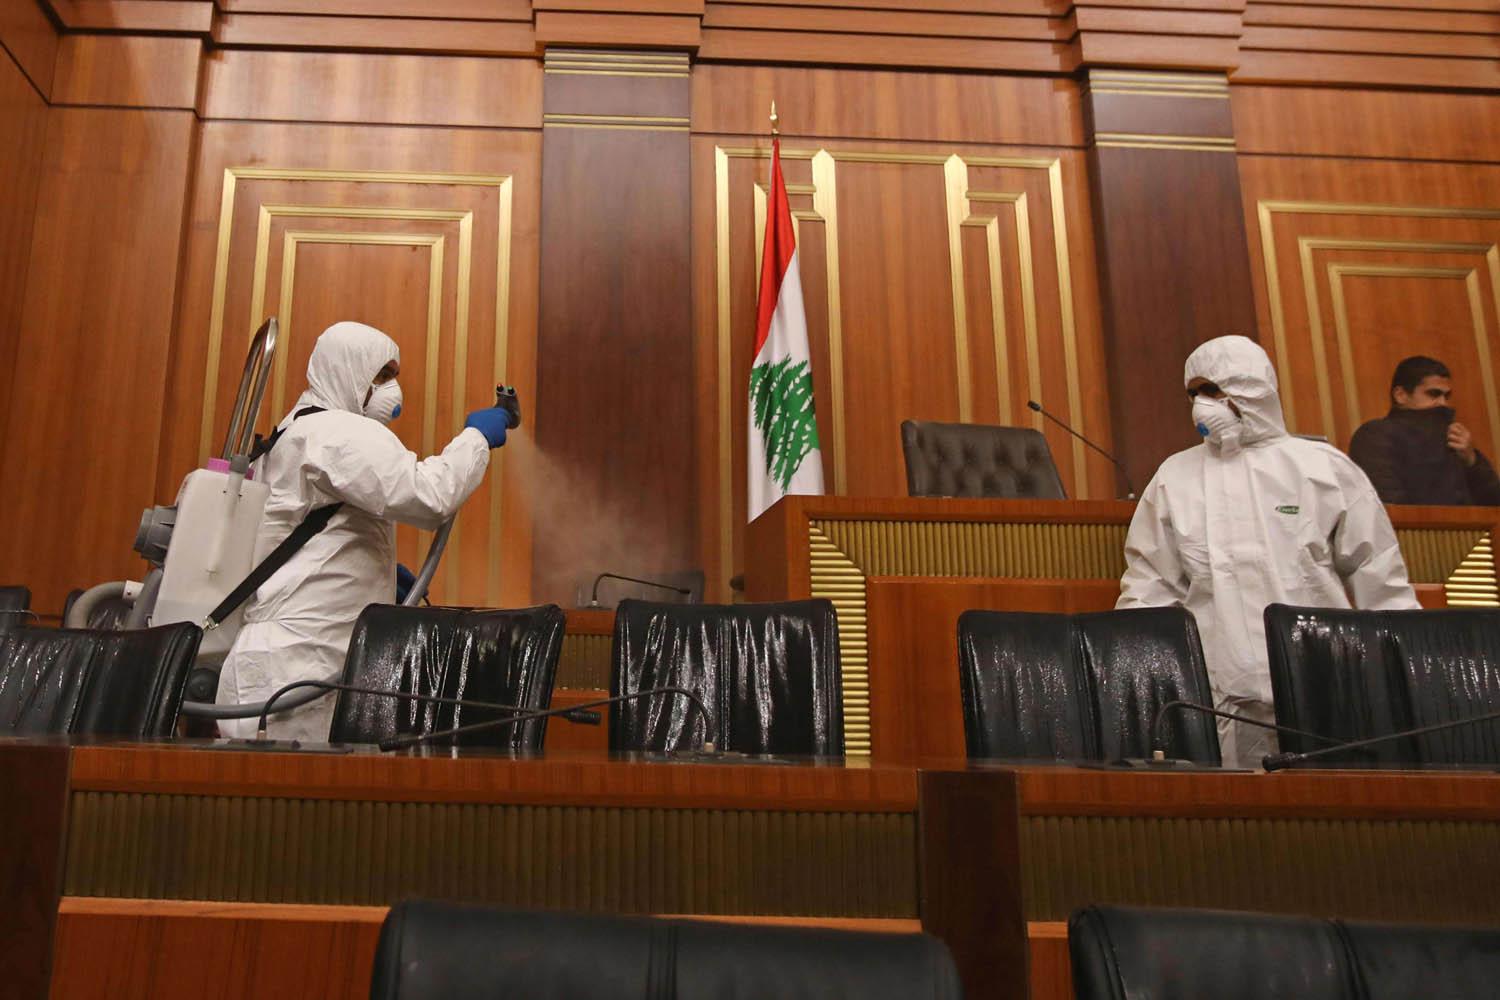 مختصون يقومون بتعقيم قاعة البرلمان اللبناني